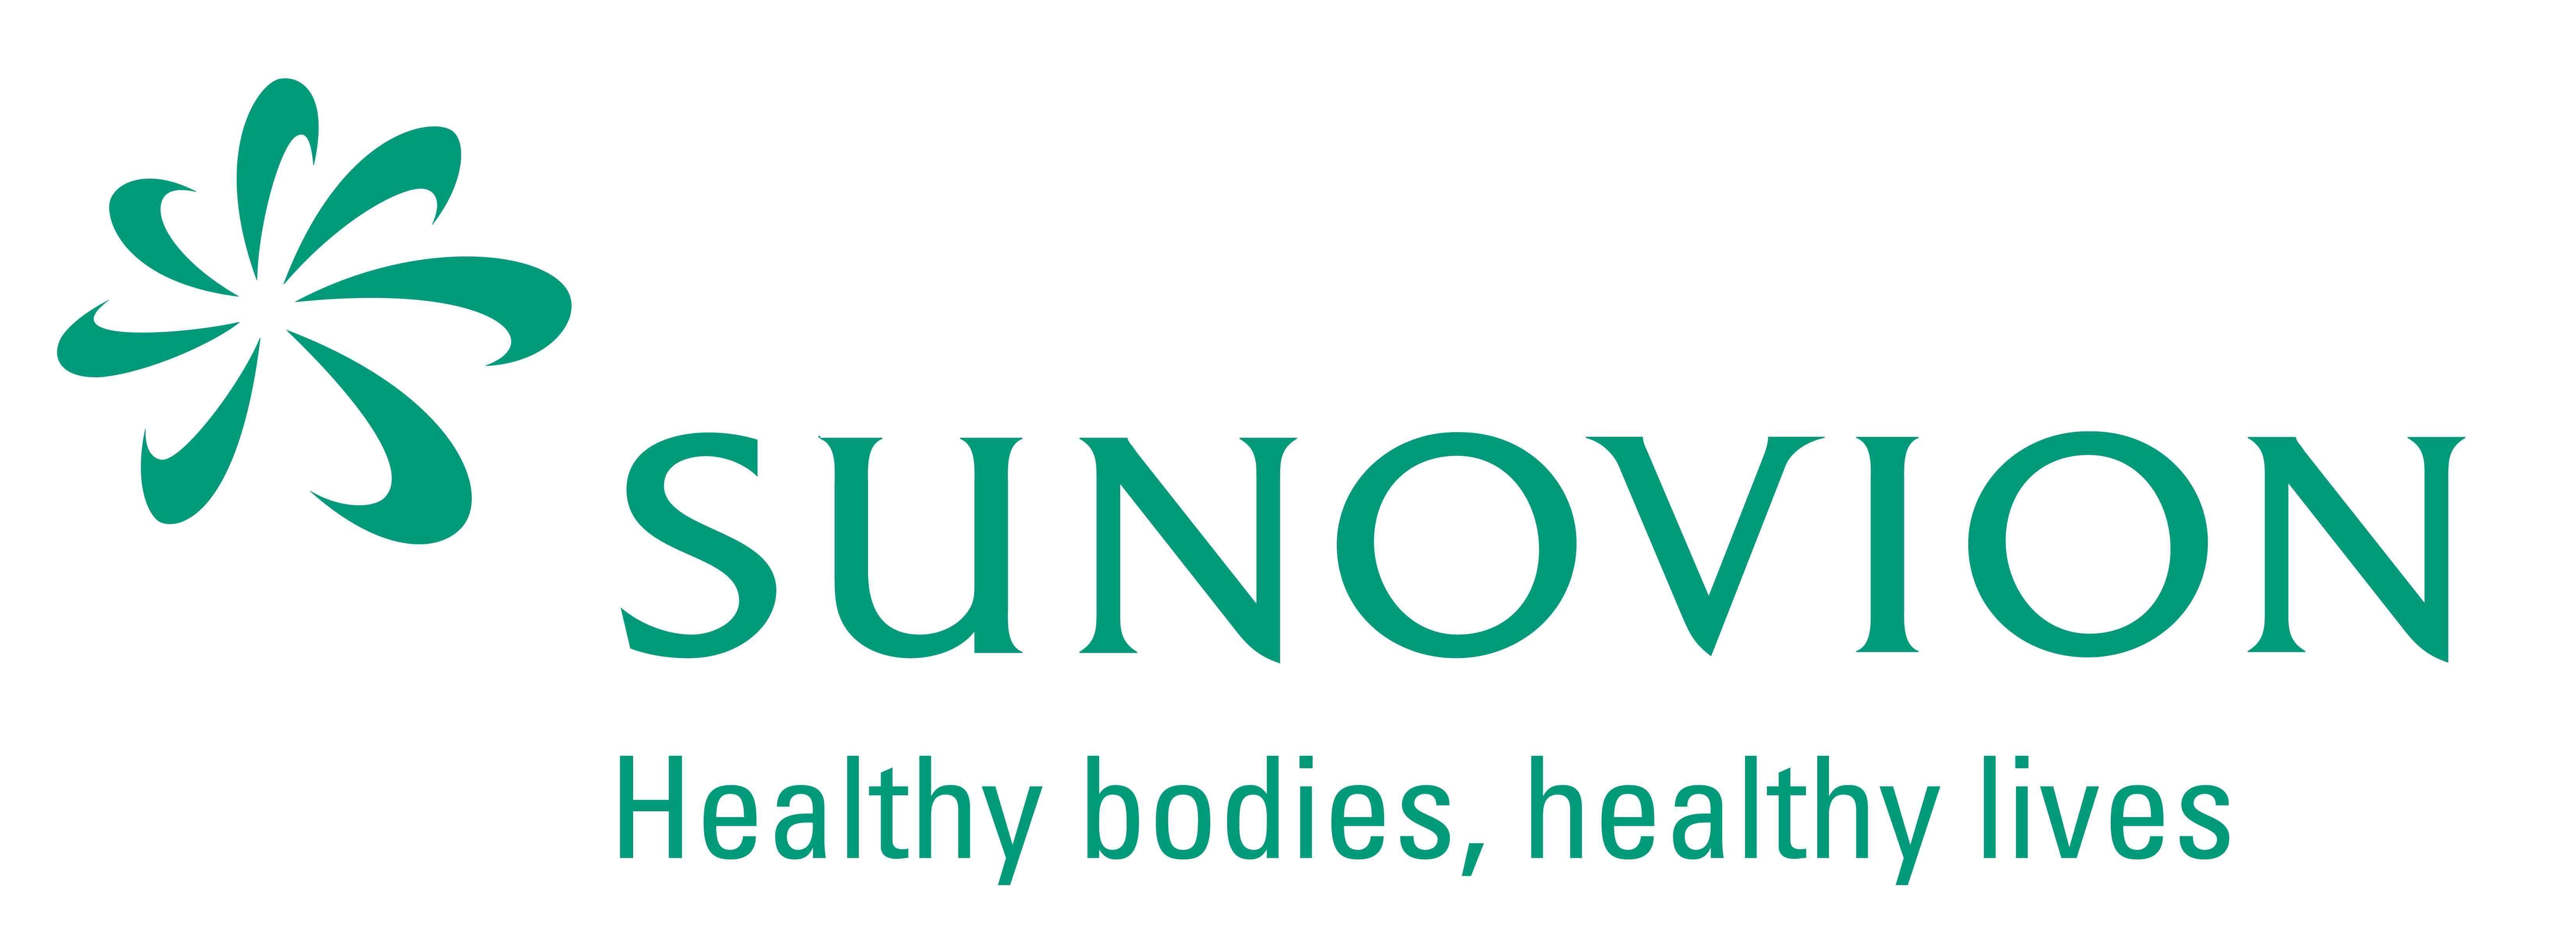 Sunovion Logo - Sunovion Logo